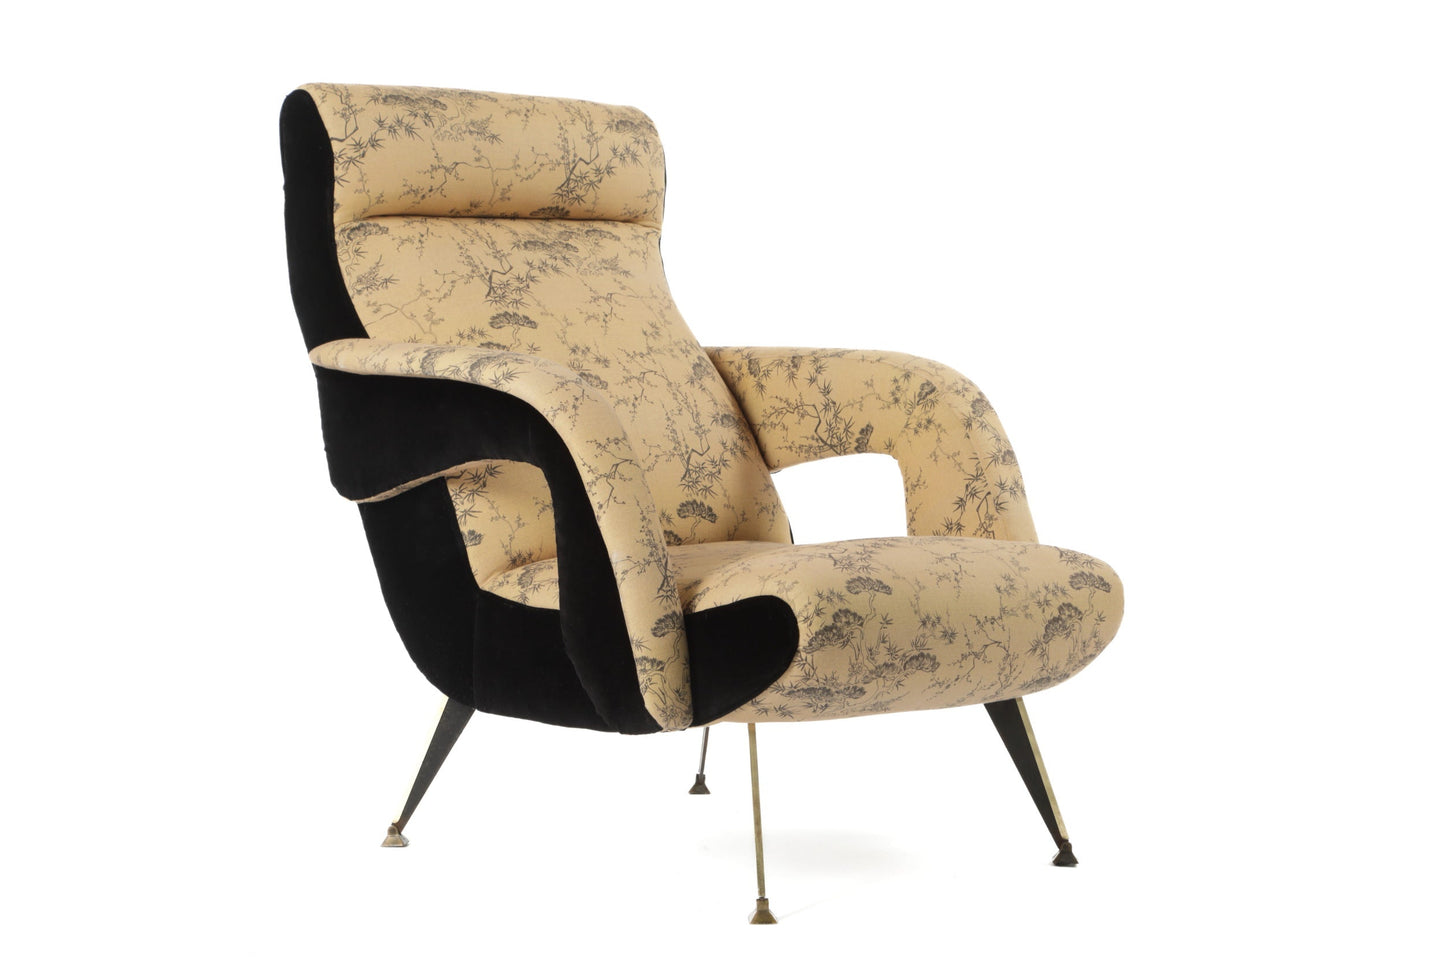 70s armchair reinterpreted by triplef